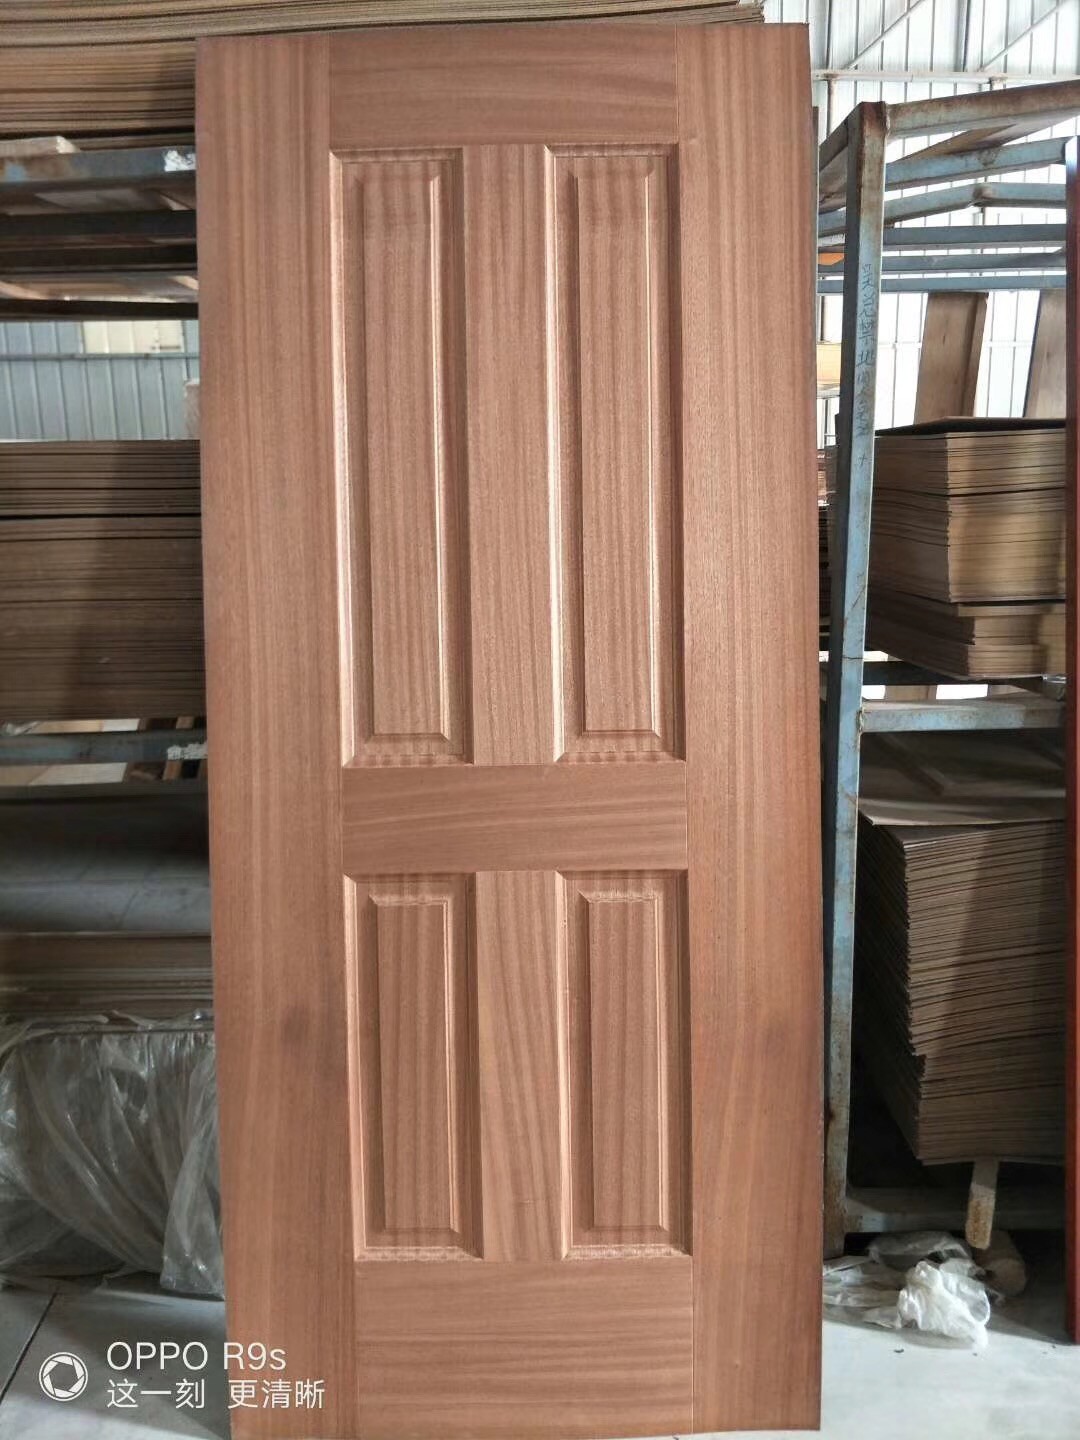  Low Moisture Content Decorative Door Skins , Door Veneer Skins Natural Sapele Moulded Manufactures